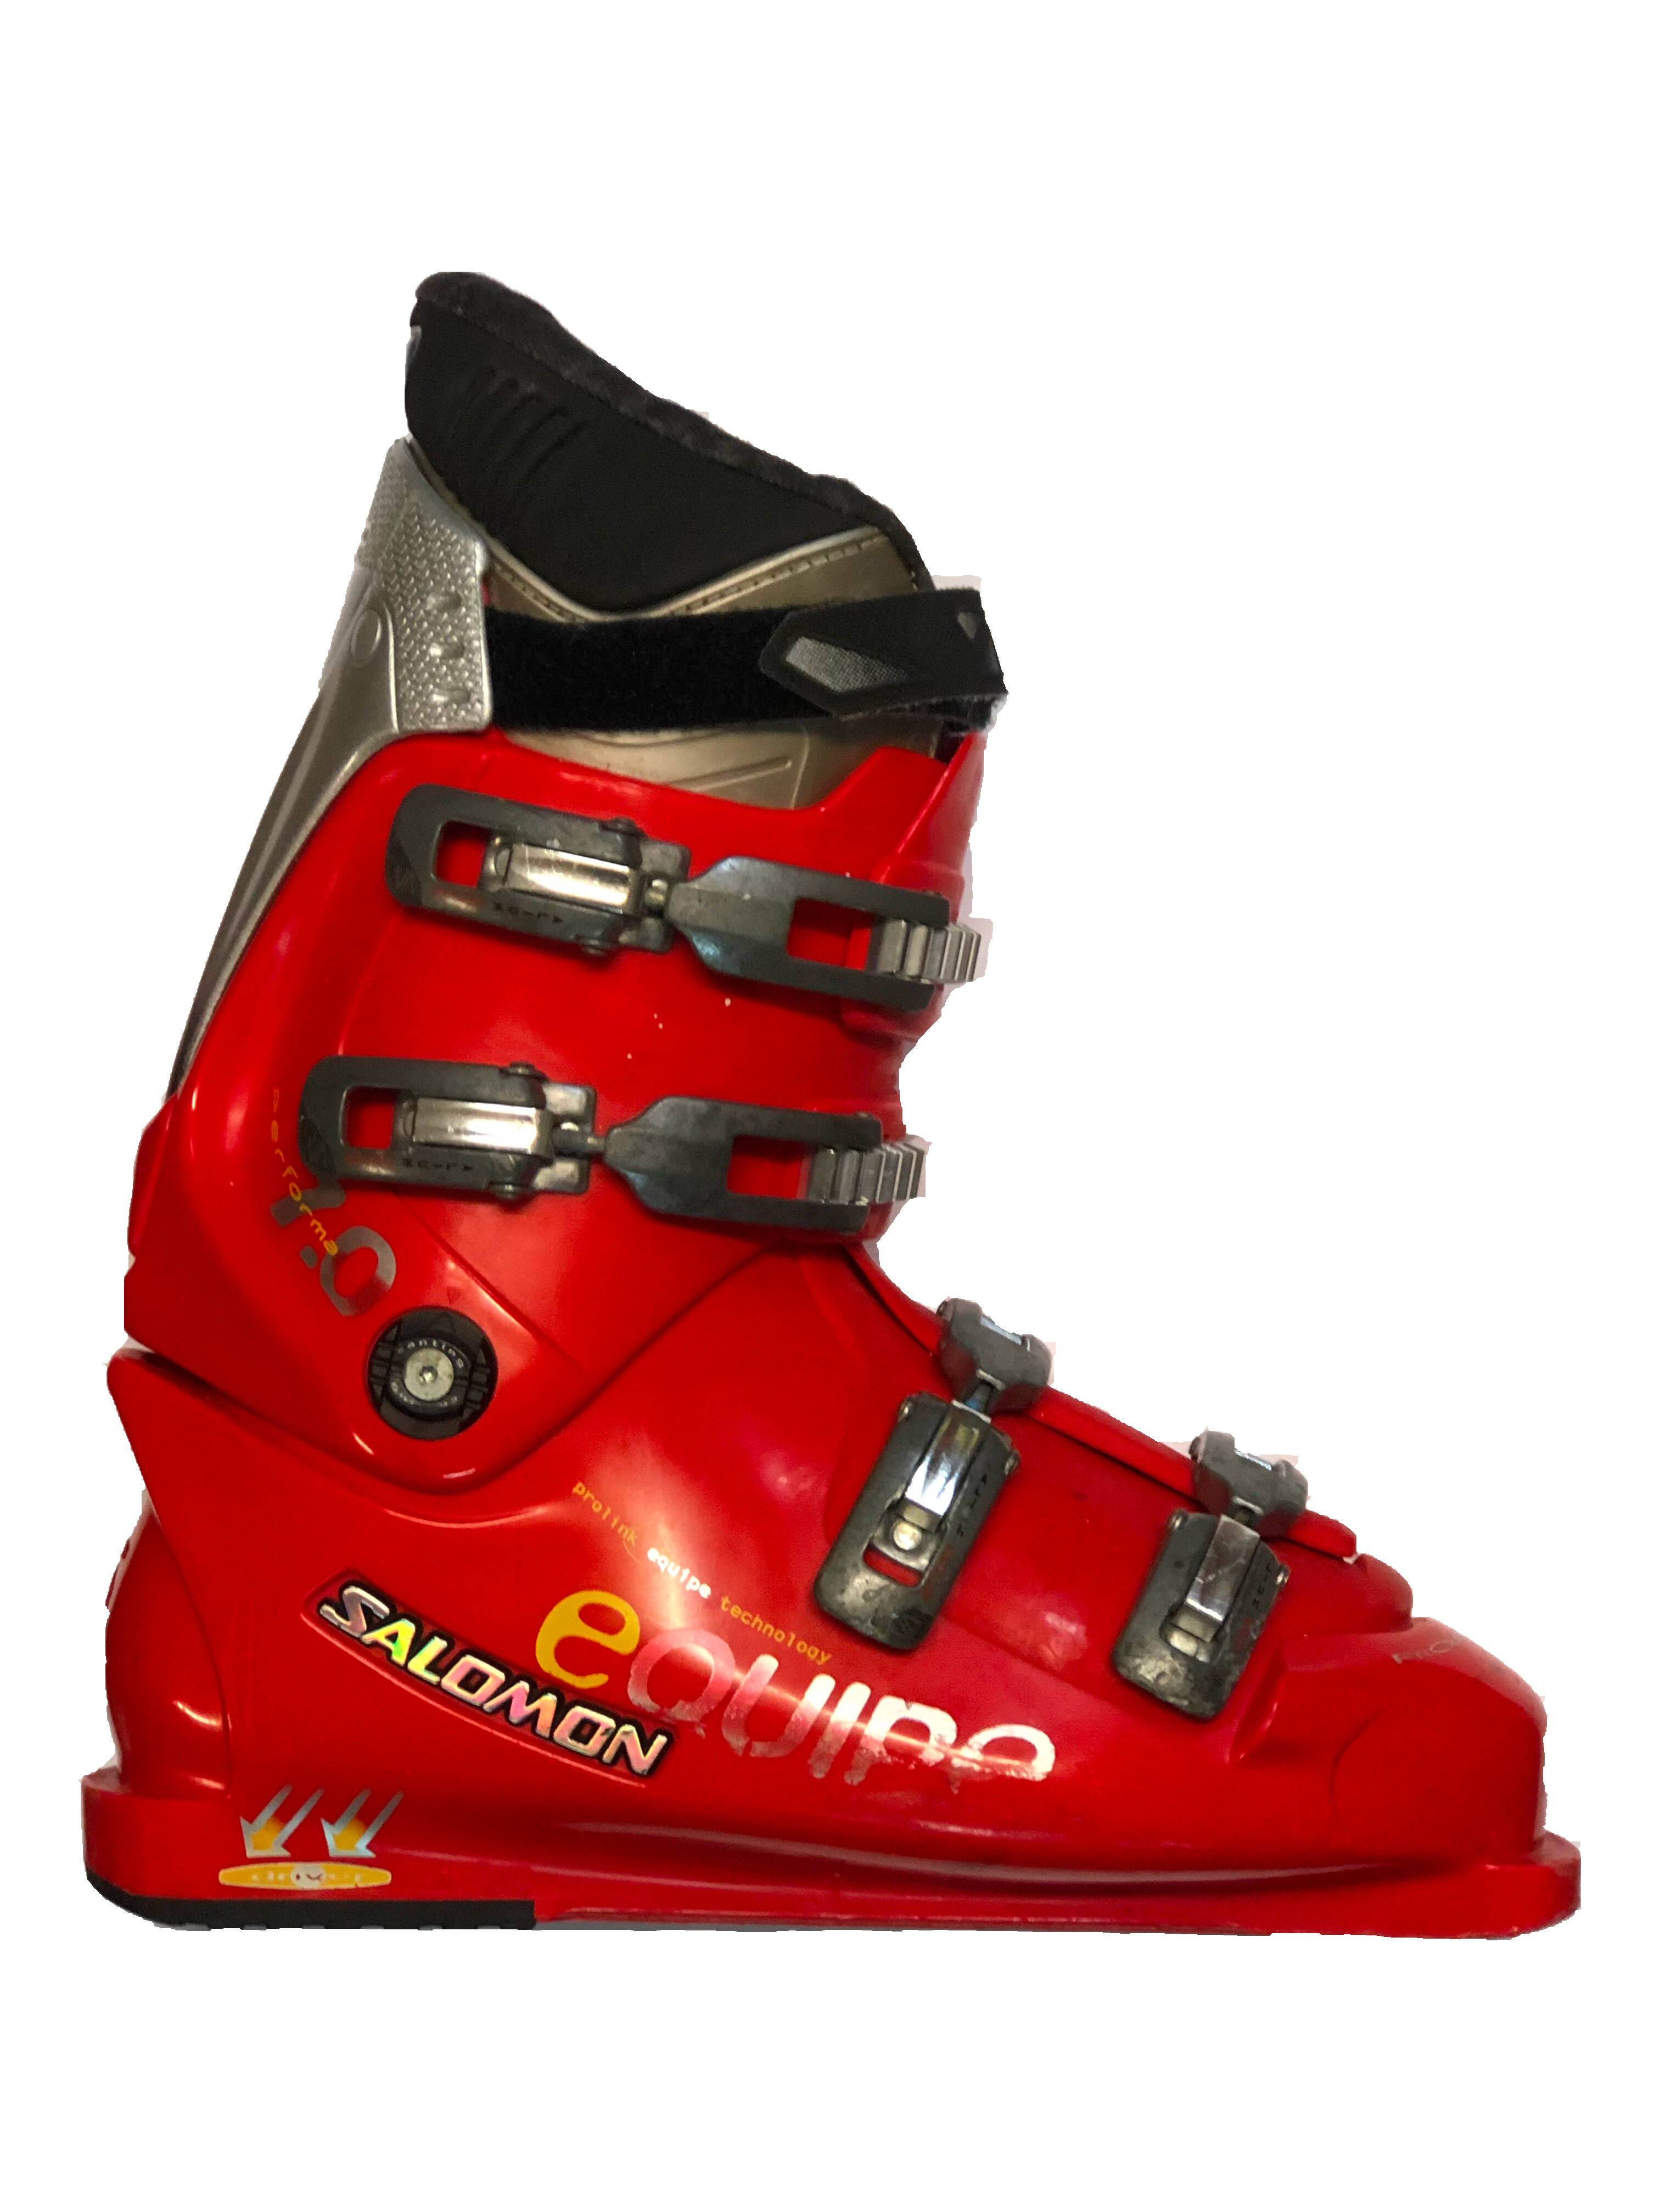 Używane buty narciarskie SALOMON 31,0 / 348mm rozmiar 47 :: Sklep Sportowy  - outlet sportowy, koncówki kolekcji, wyprzedaże, narty, deski, wiązania,  sprzet narciarski, buty sportowe